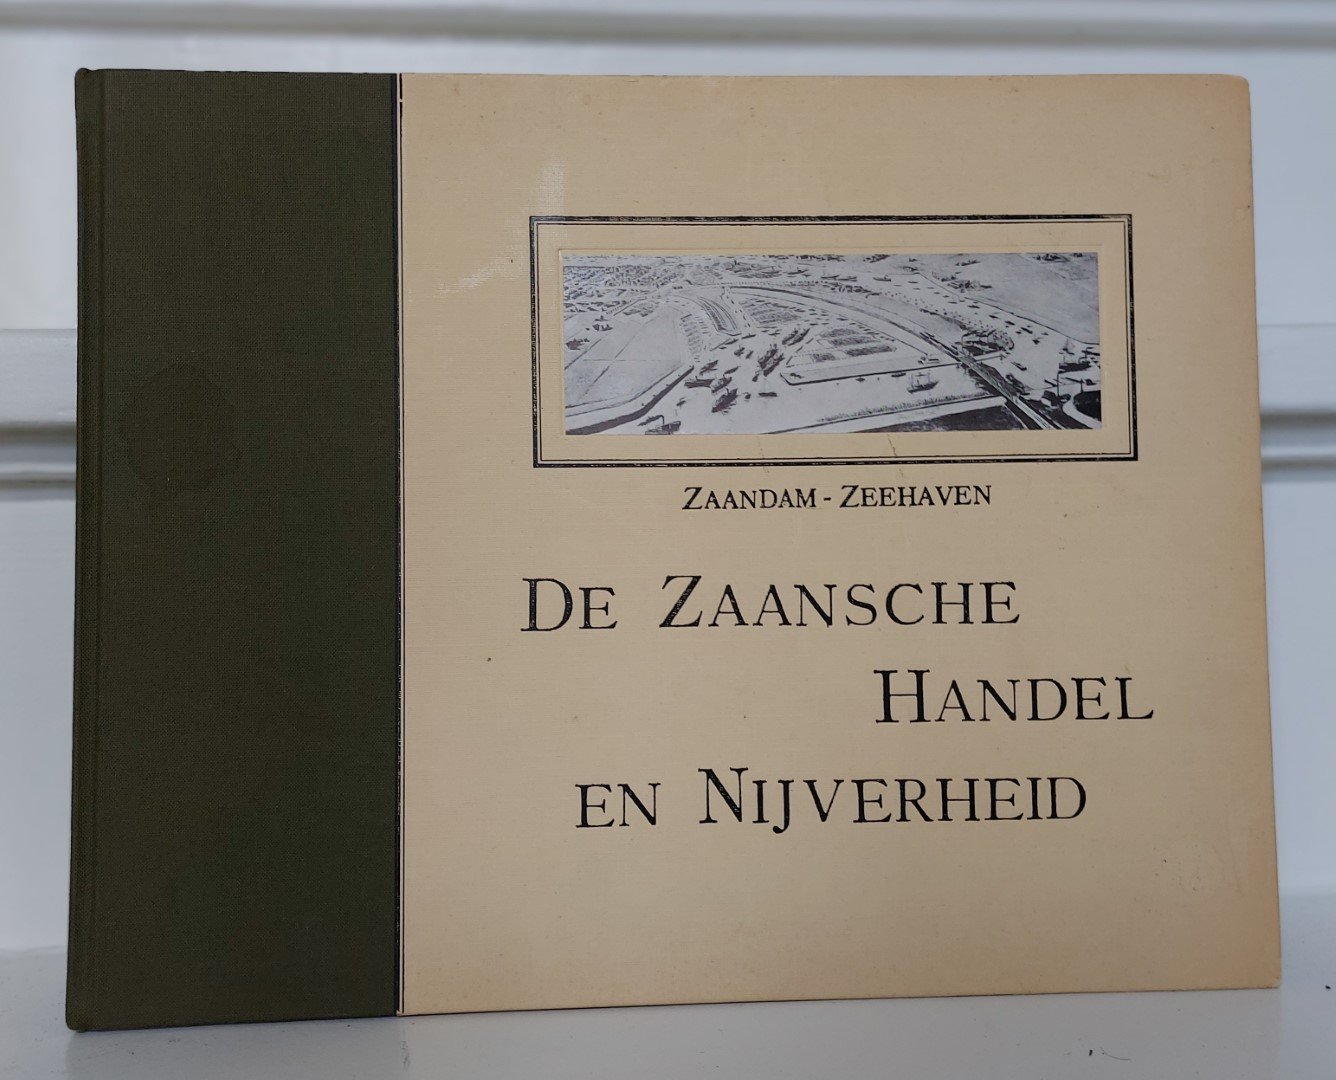 Tiesinga, G.h.l. - De Zaansche Handel en Nijverheid Zaandam - zeehaven (Herdruk)